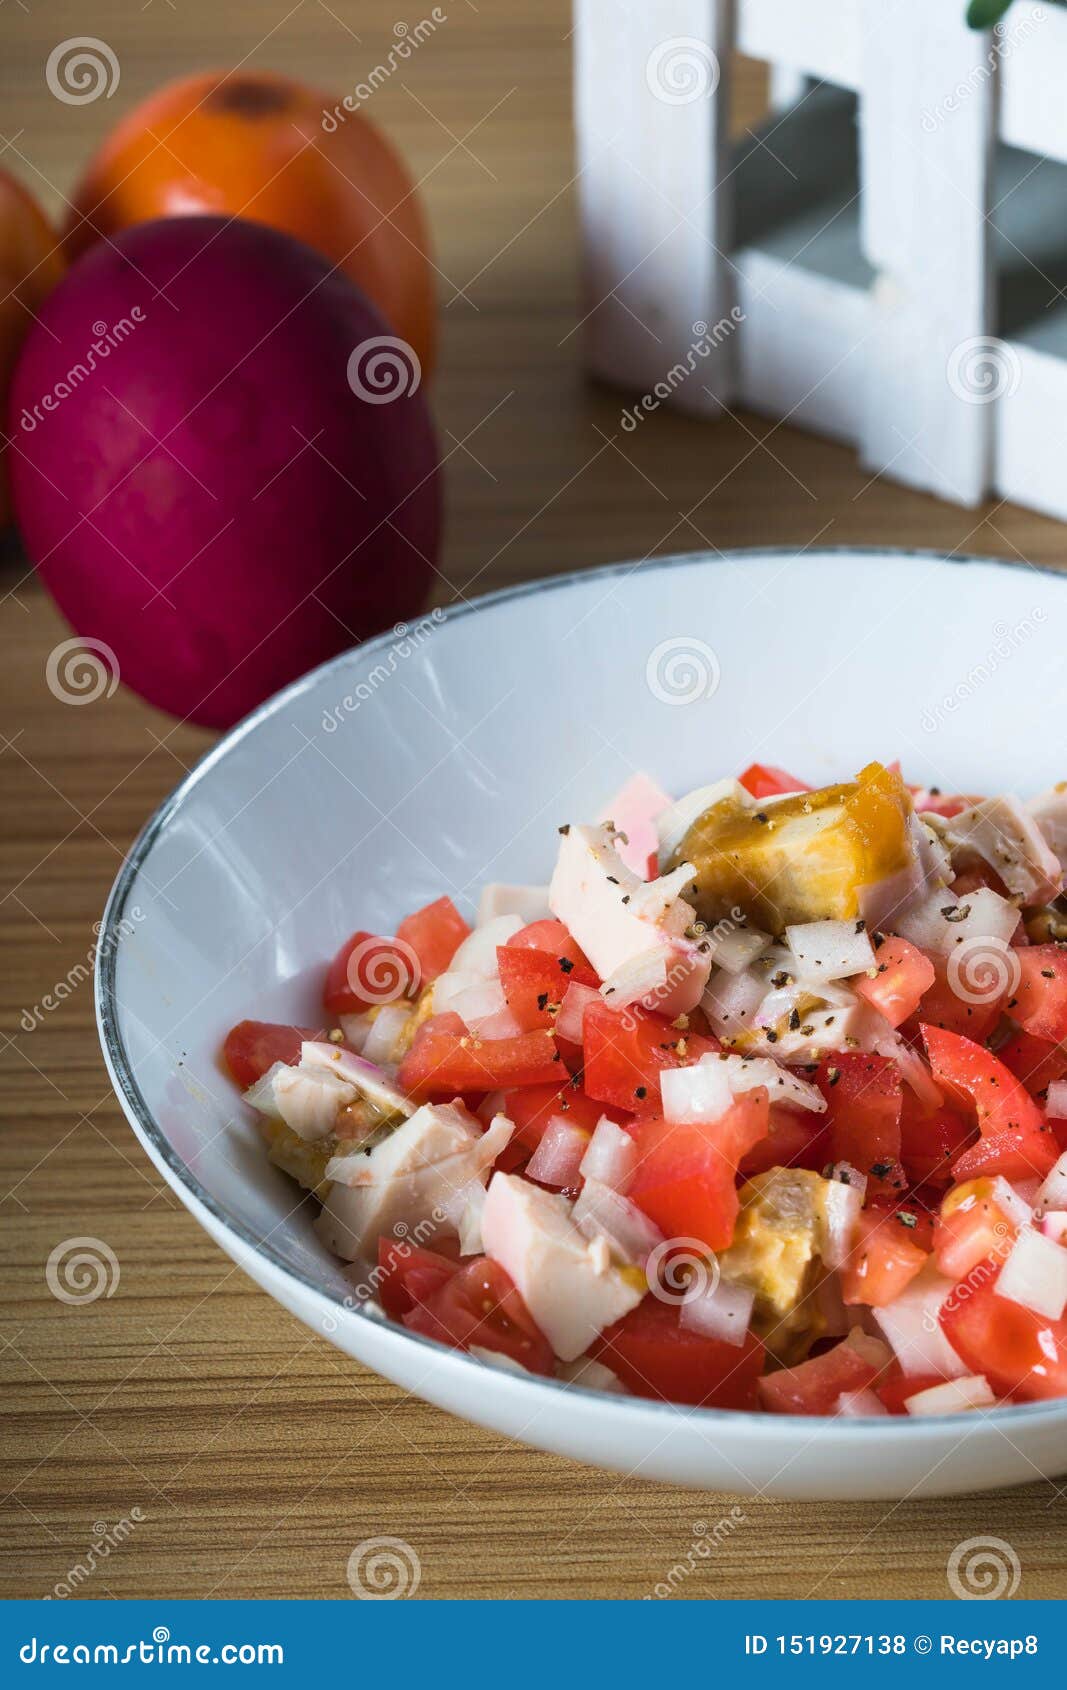 Salateier Mit Roten Zwiebeln Und Tomaten Stockfoto - Bild von diät ...